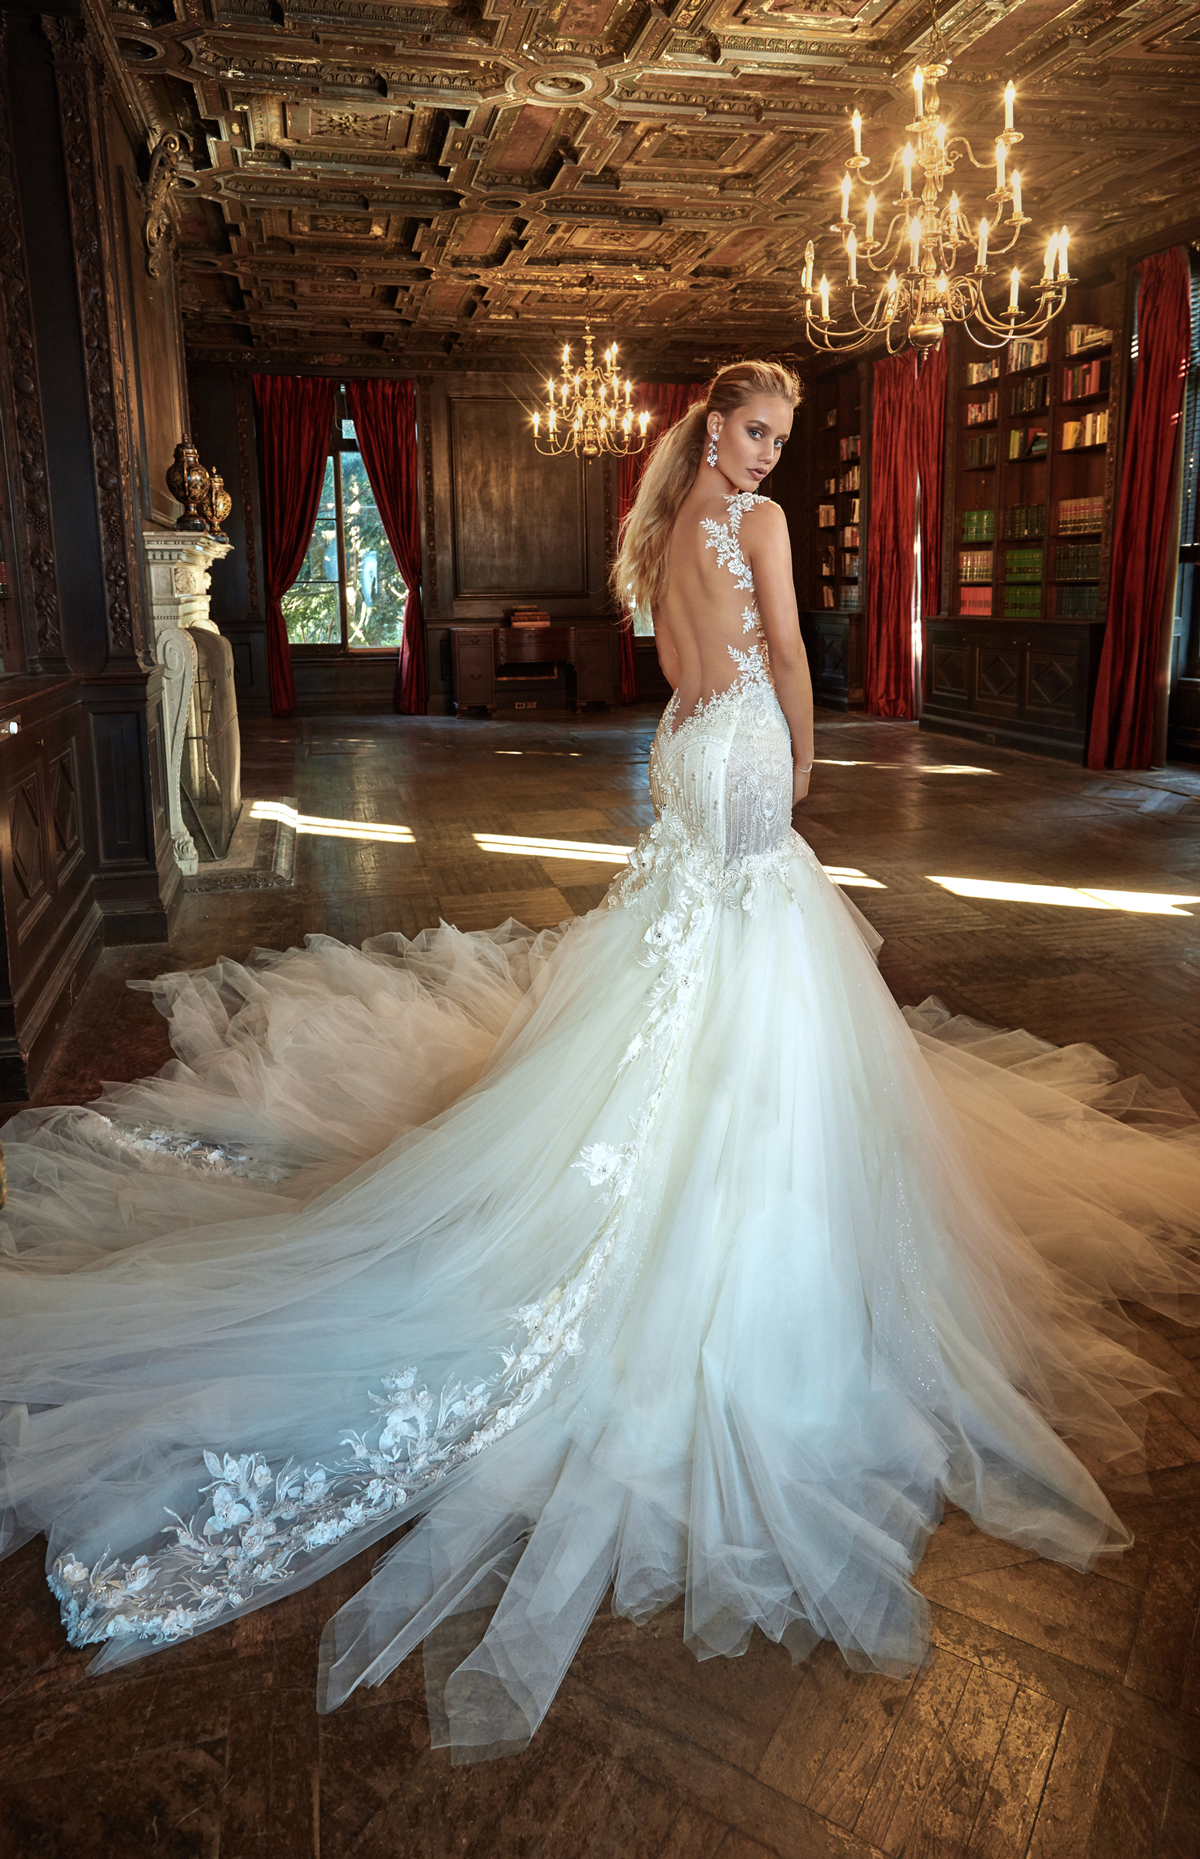 Chiêm ngưỡng bộ sưu tập váy cưới đẹp như nữ thần của thương hiệu váy cưới đình đám Galia Lahav cùng các thiết kế vô cùng tinh tế, gợi cảm và chất liệu vải sang trọng.